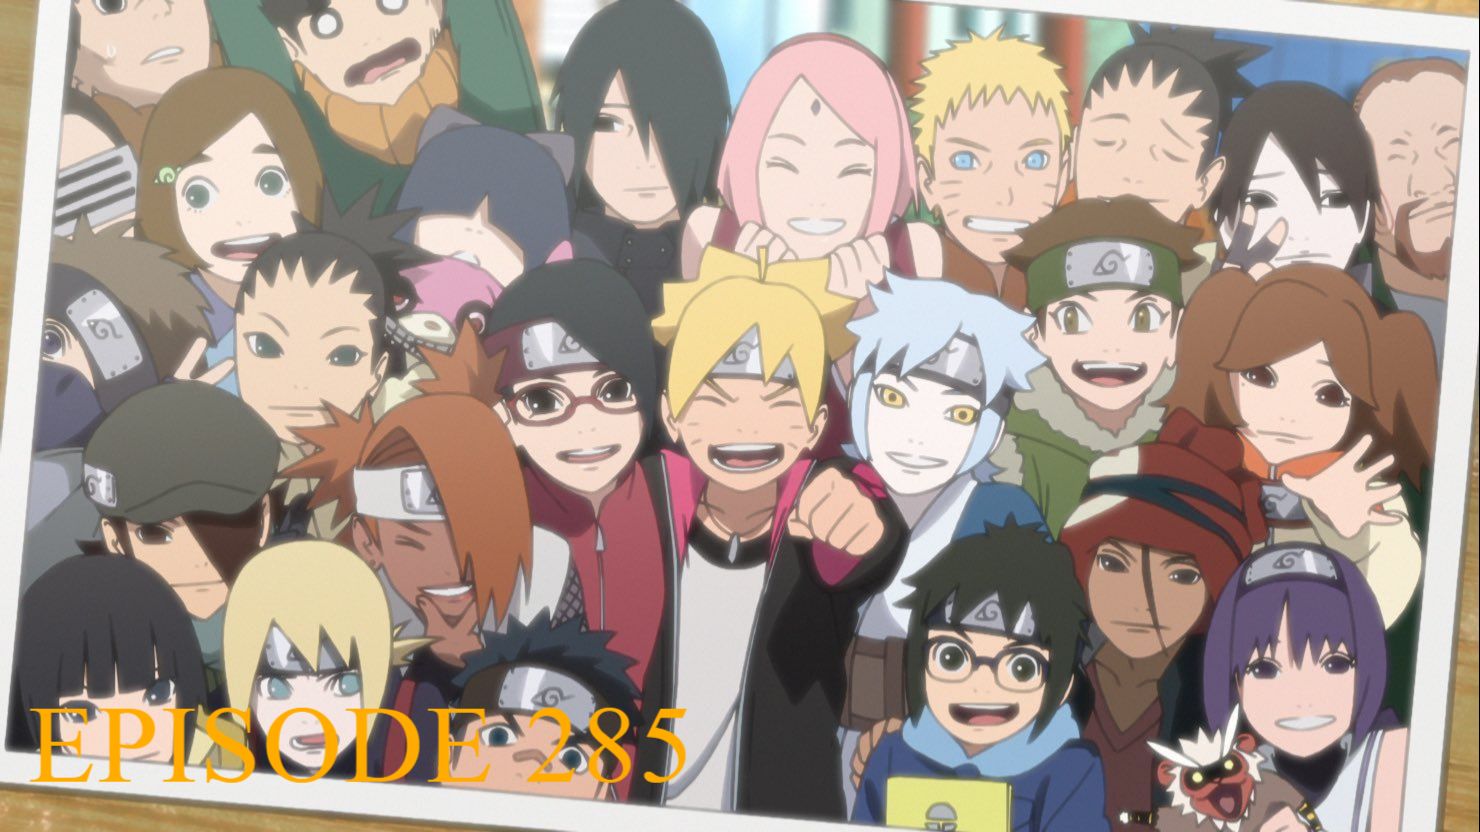 Assistir Boruto: Naruto Next Generations Episodio 285 Online